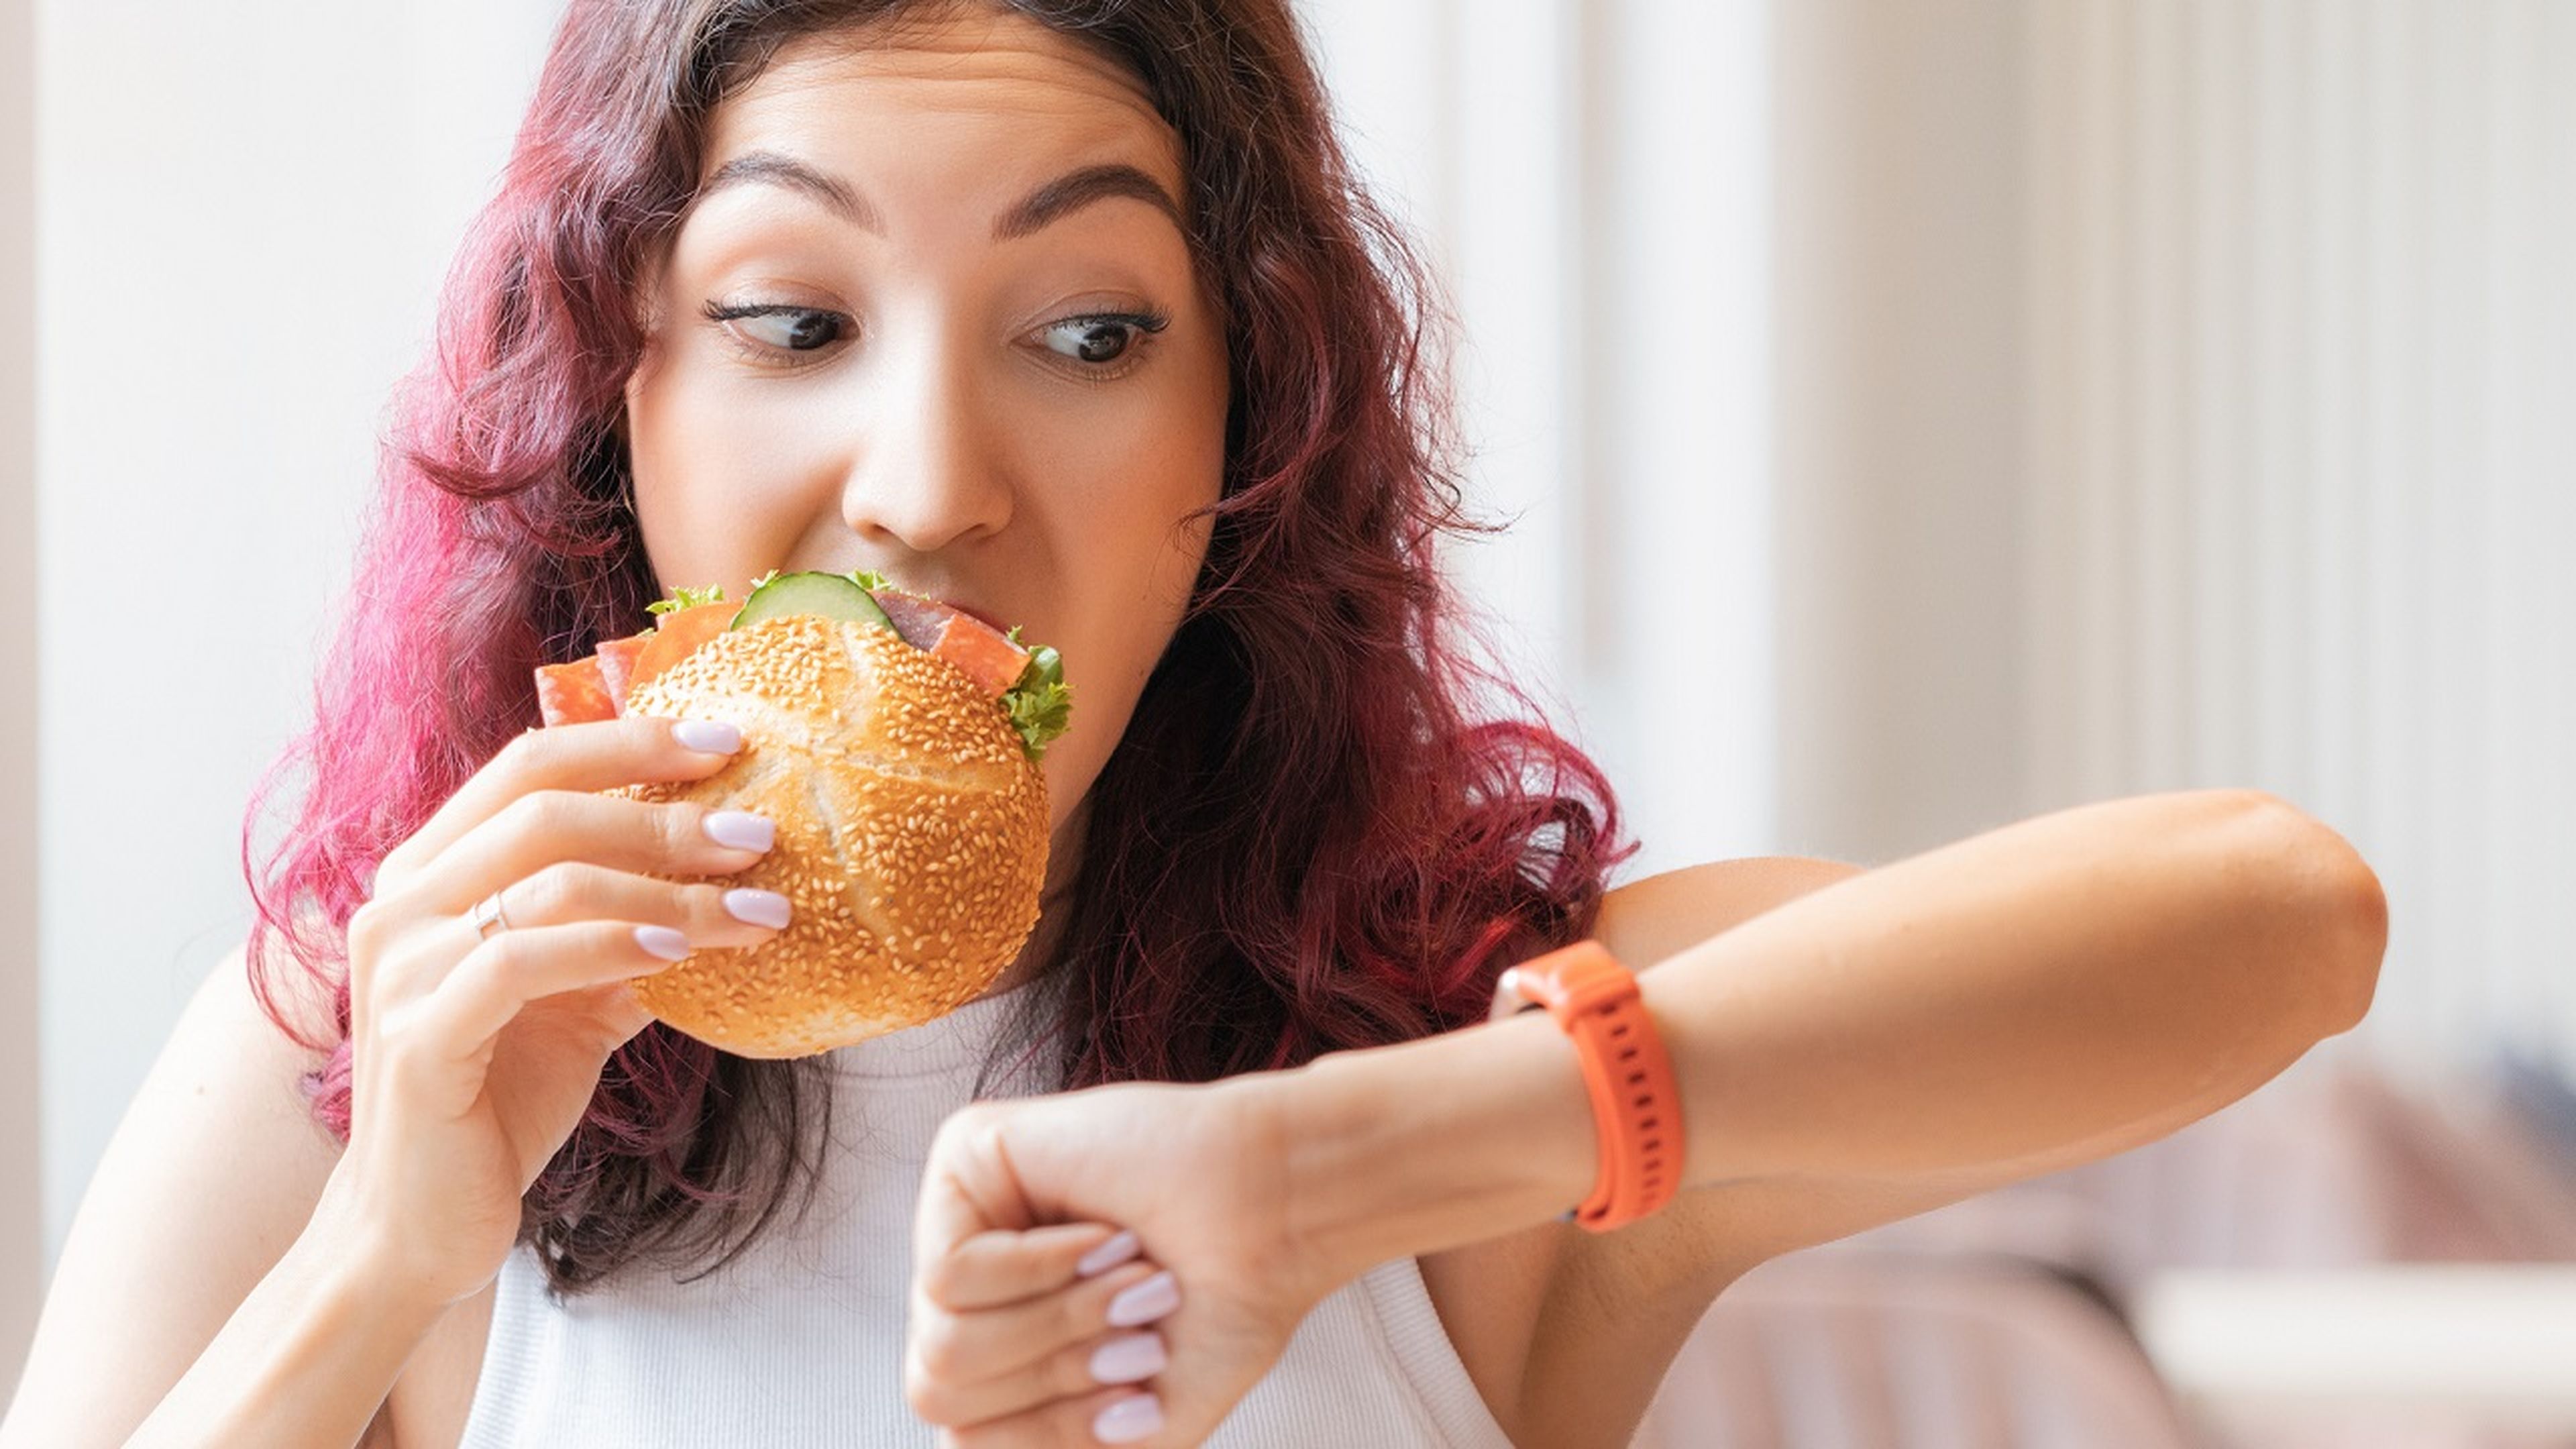 ¿Comes demasiado rápido? Así podría reaccionar tu cuerpo, según los expertos